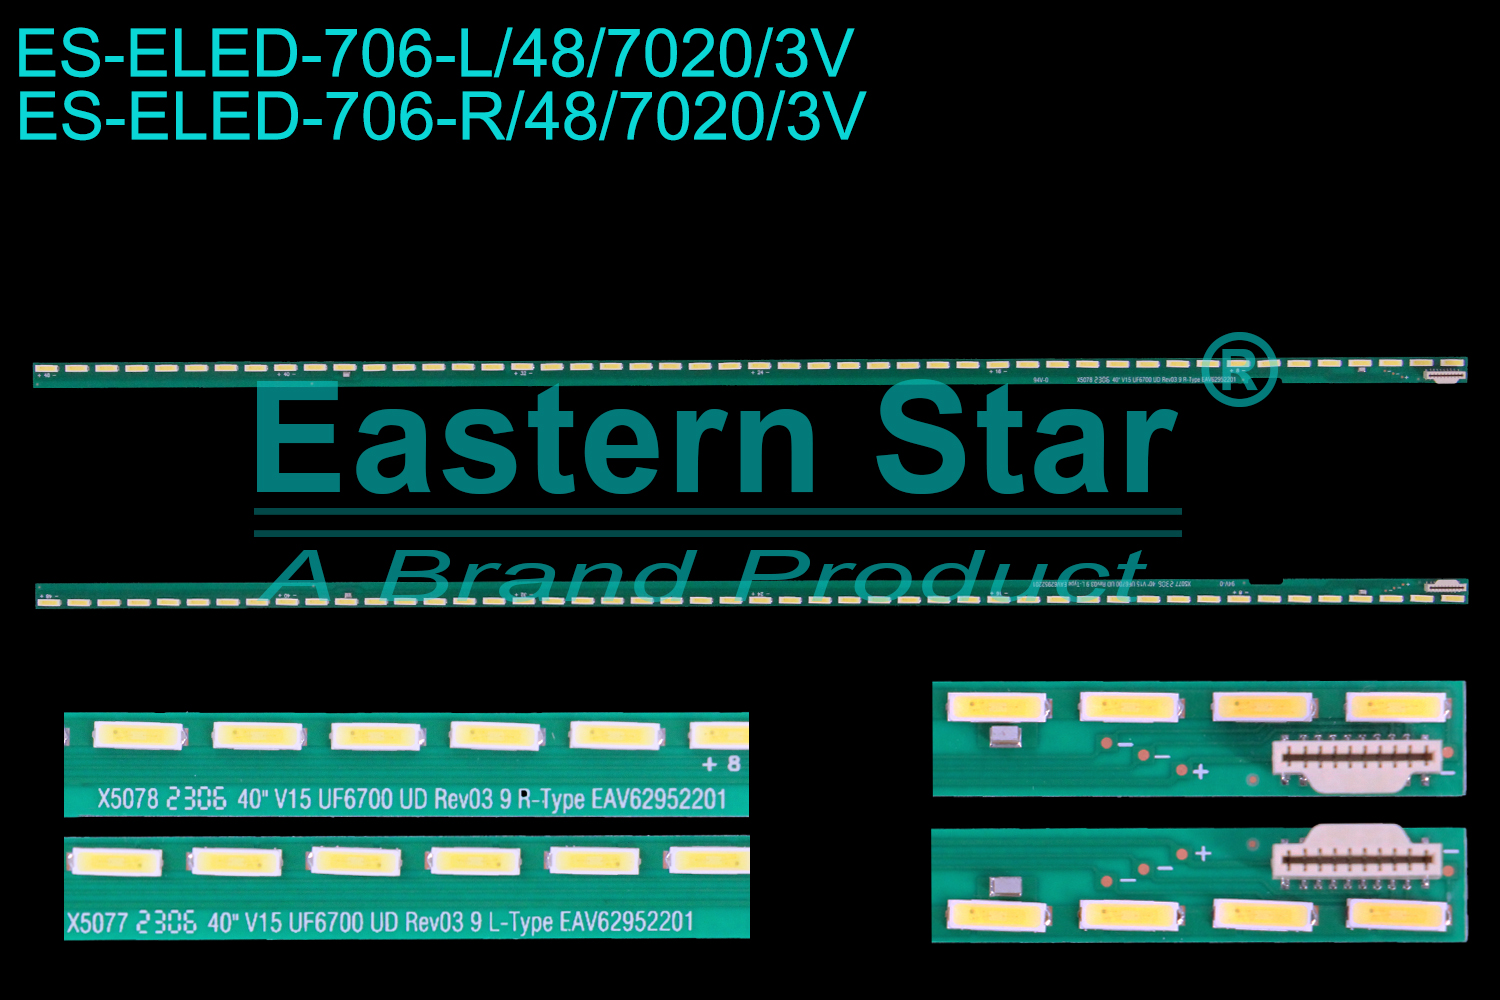 ES-ELED-706 ELED/EDGE TV backlight use for 40'' 40UF770V L:40"V15 UF6700 UD Rev03 9 L-Type EAV62952201 R: 40"V15 UF6700 UD Rev03 9 R-Type EAV62952201 LED STRIPS(2)